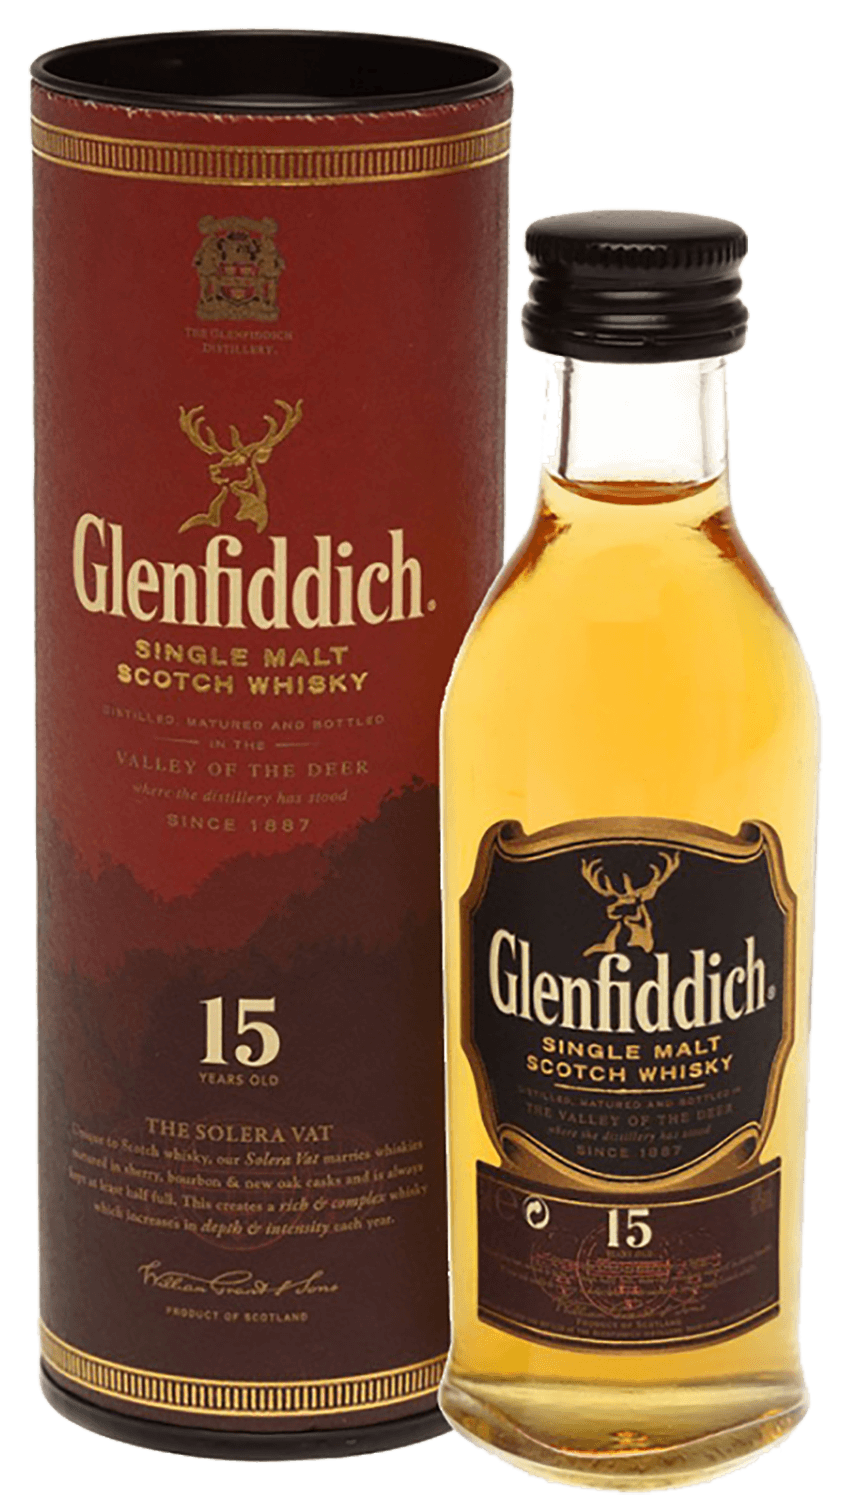 Glenfiddich Single Malt Scotch Whisky 15 y.o. (gift box) glenfiddich single malt scotch whisky 15 yo gift box